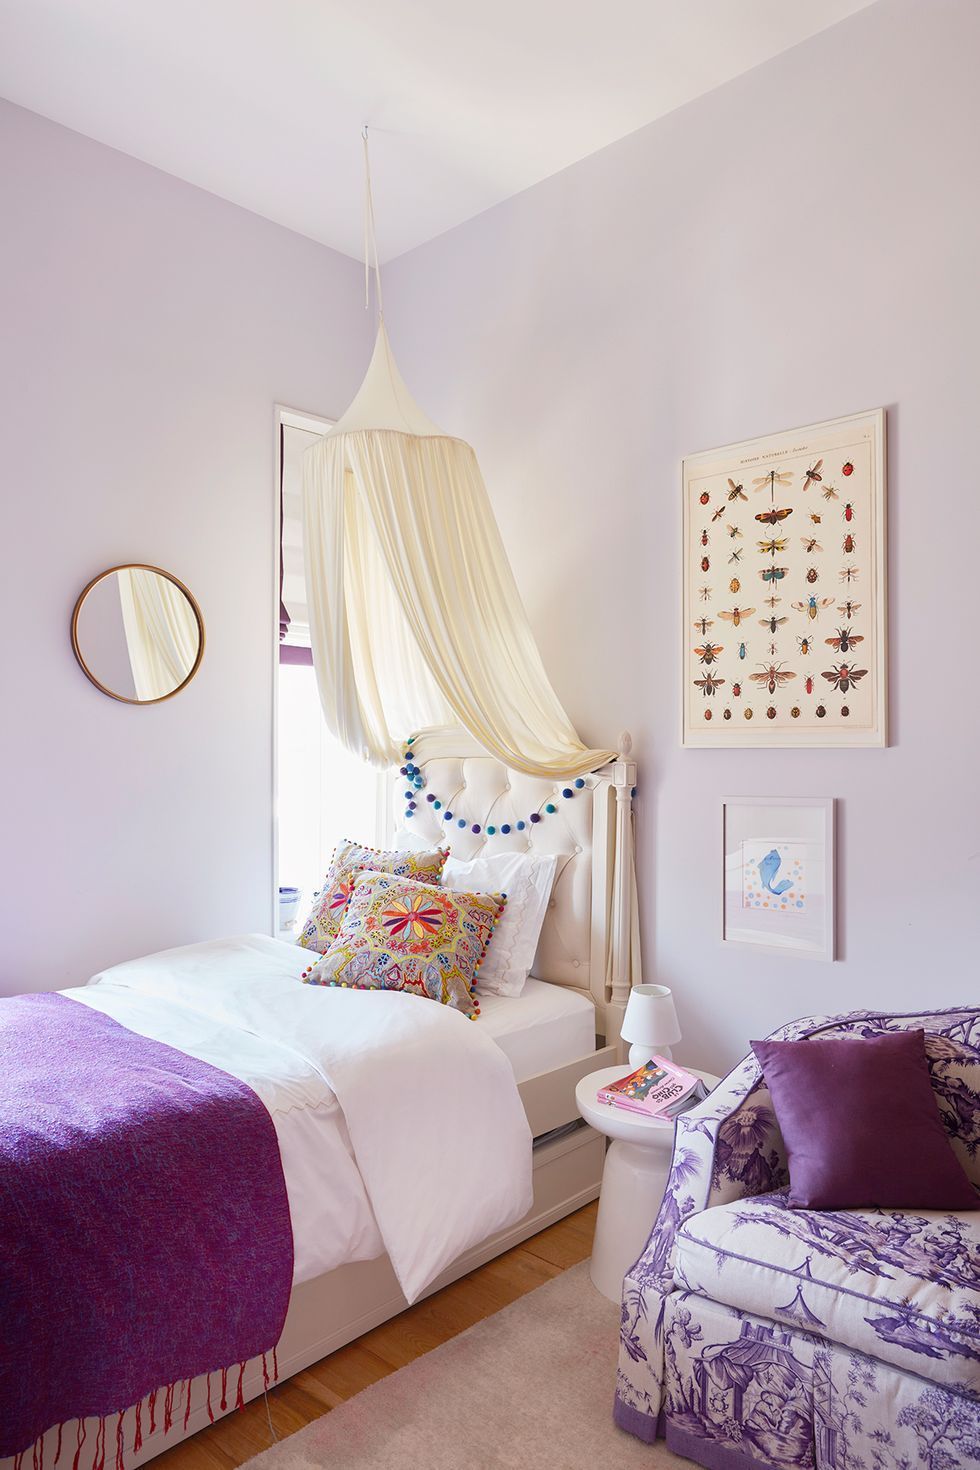 Tween Girl Bedroom Decor Ideas - Organize by Dreams